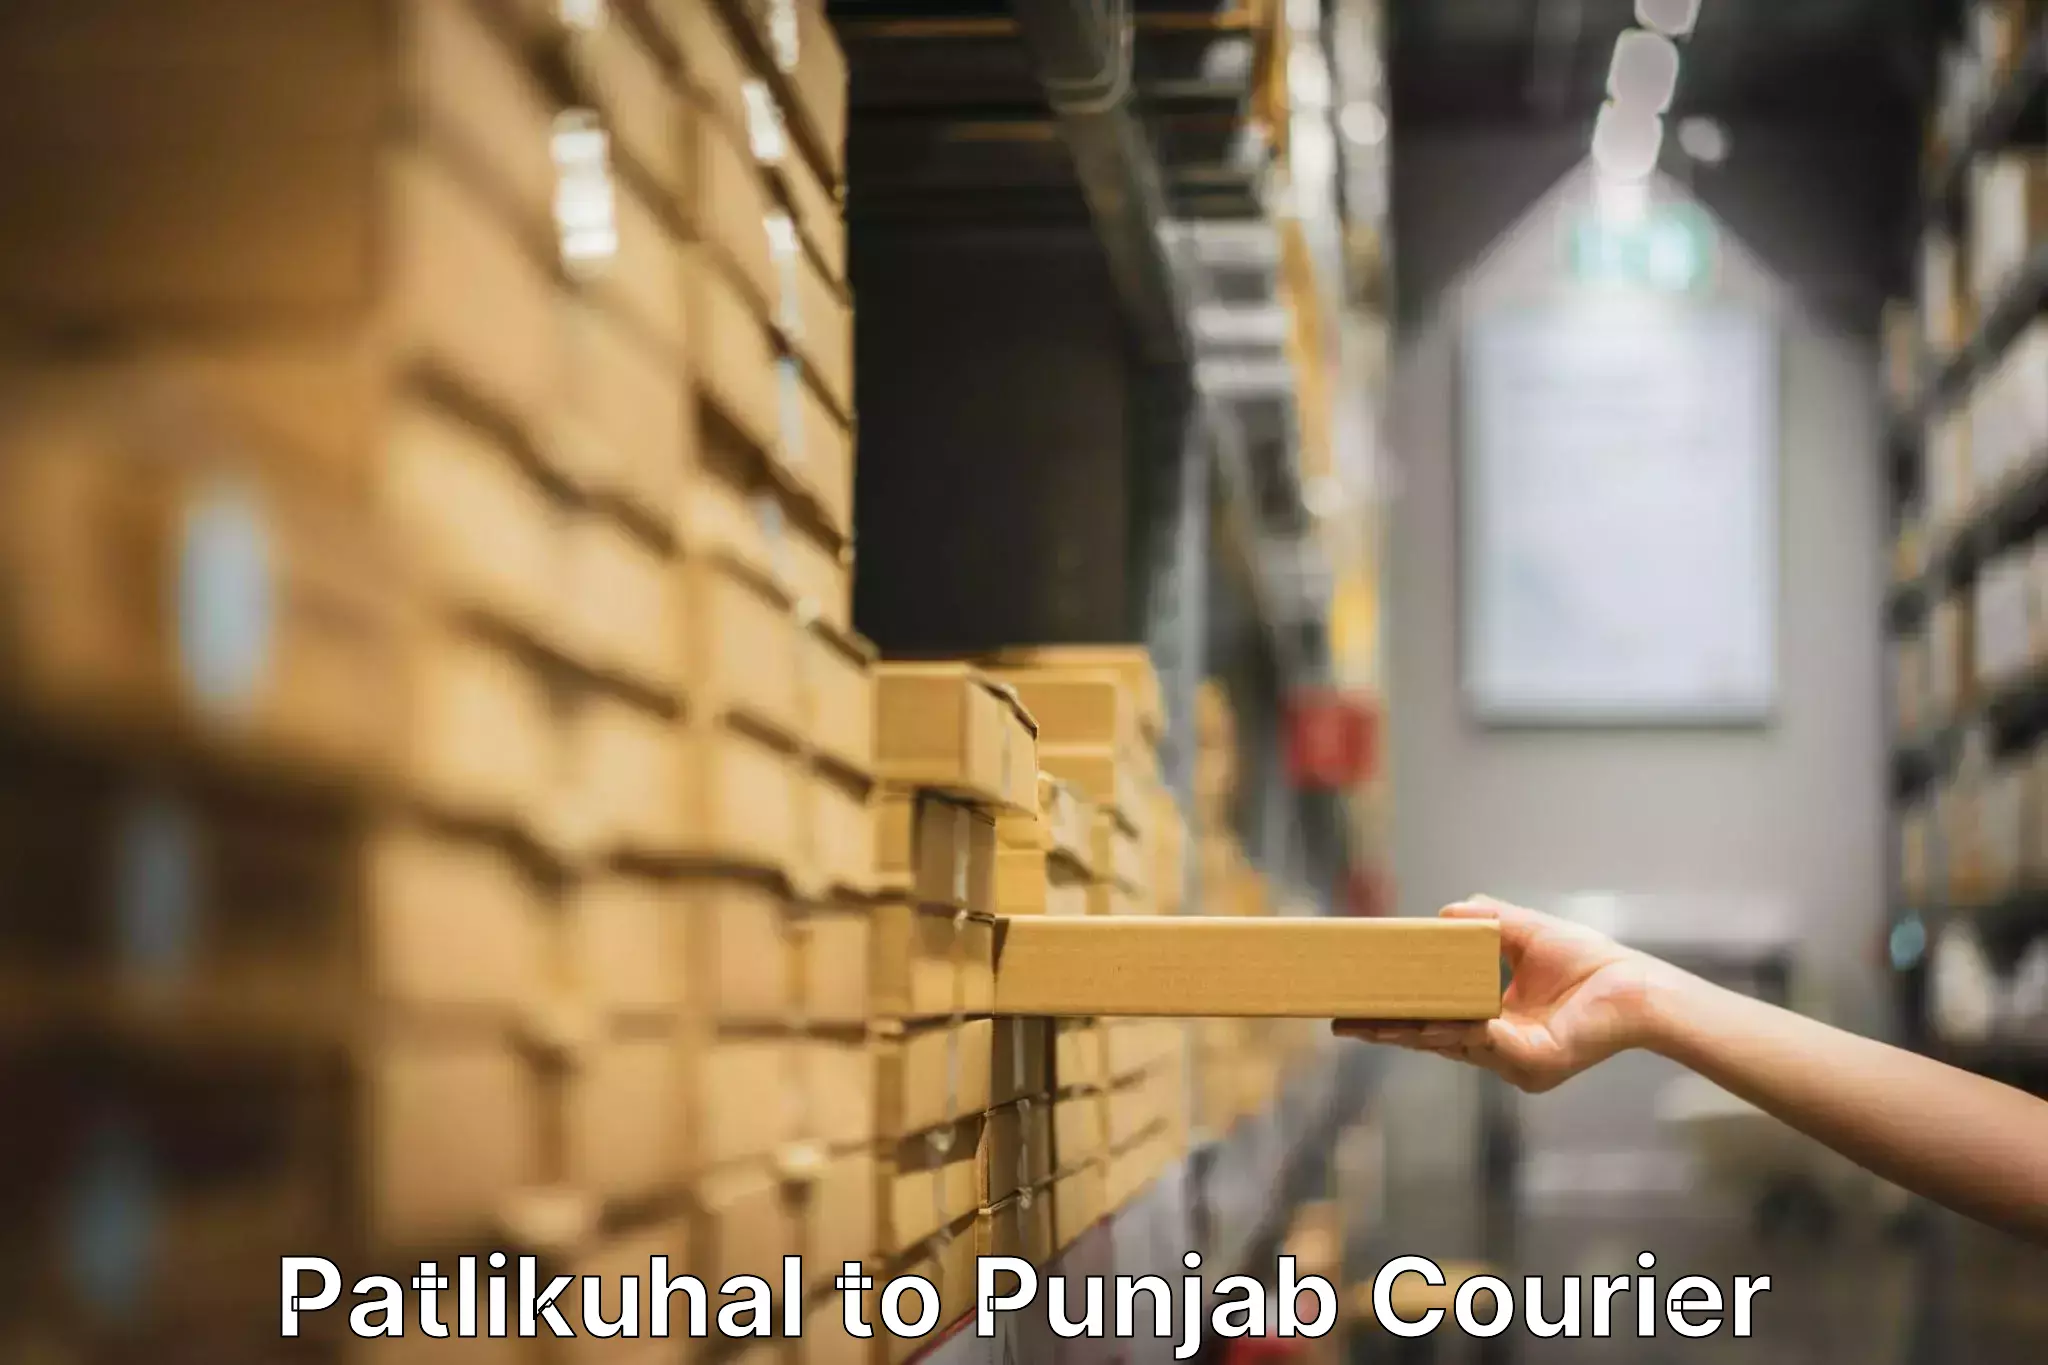 Furniture transport professionals Patlikuhal to Punjab